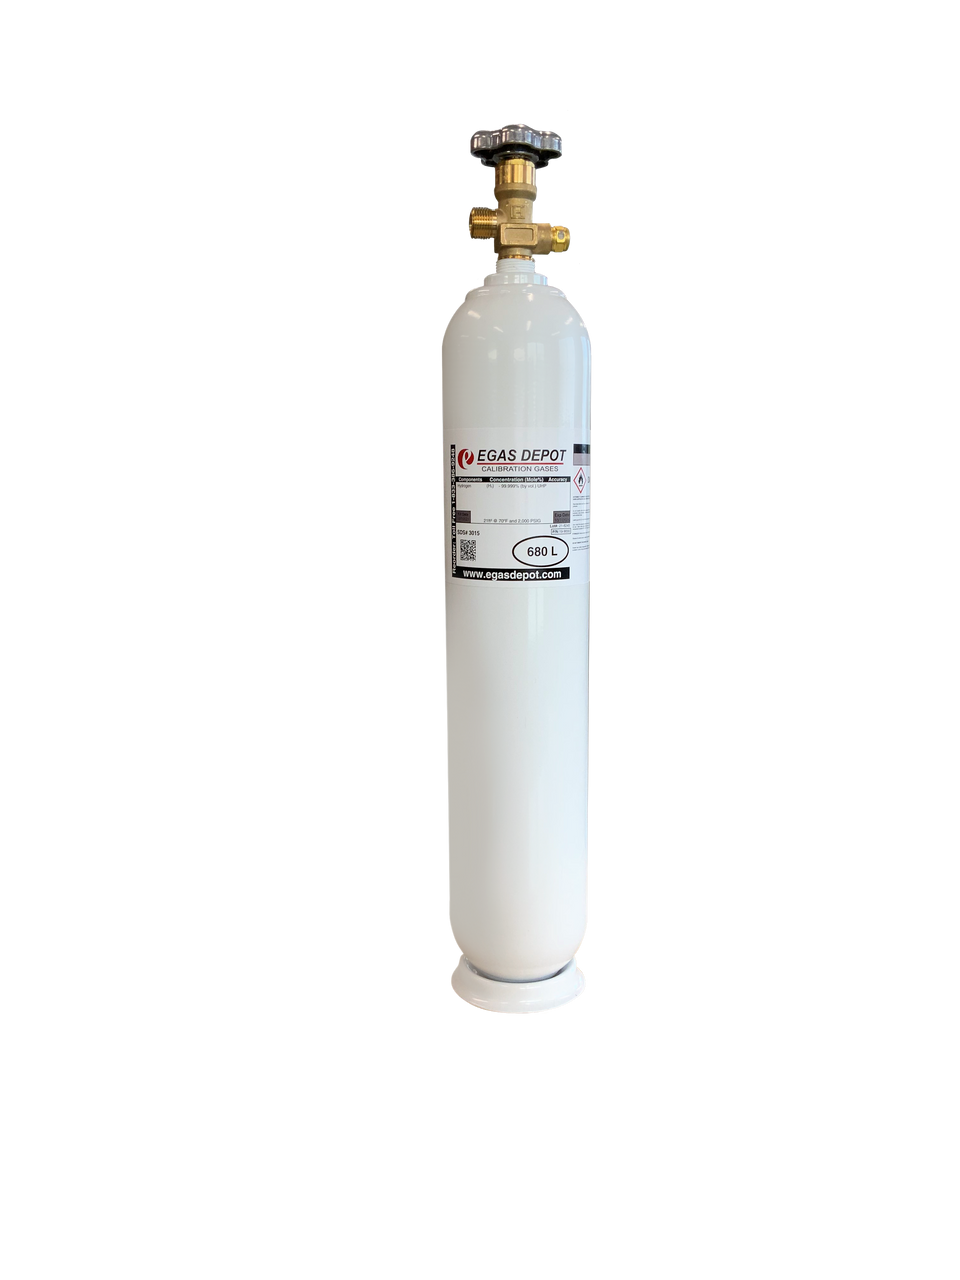 680 Liter-Carbon Monoxide 25 ppm/ Air